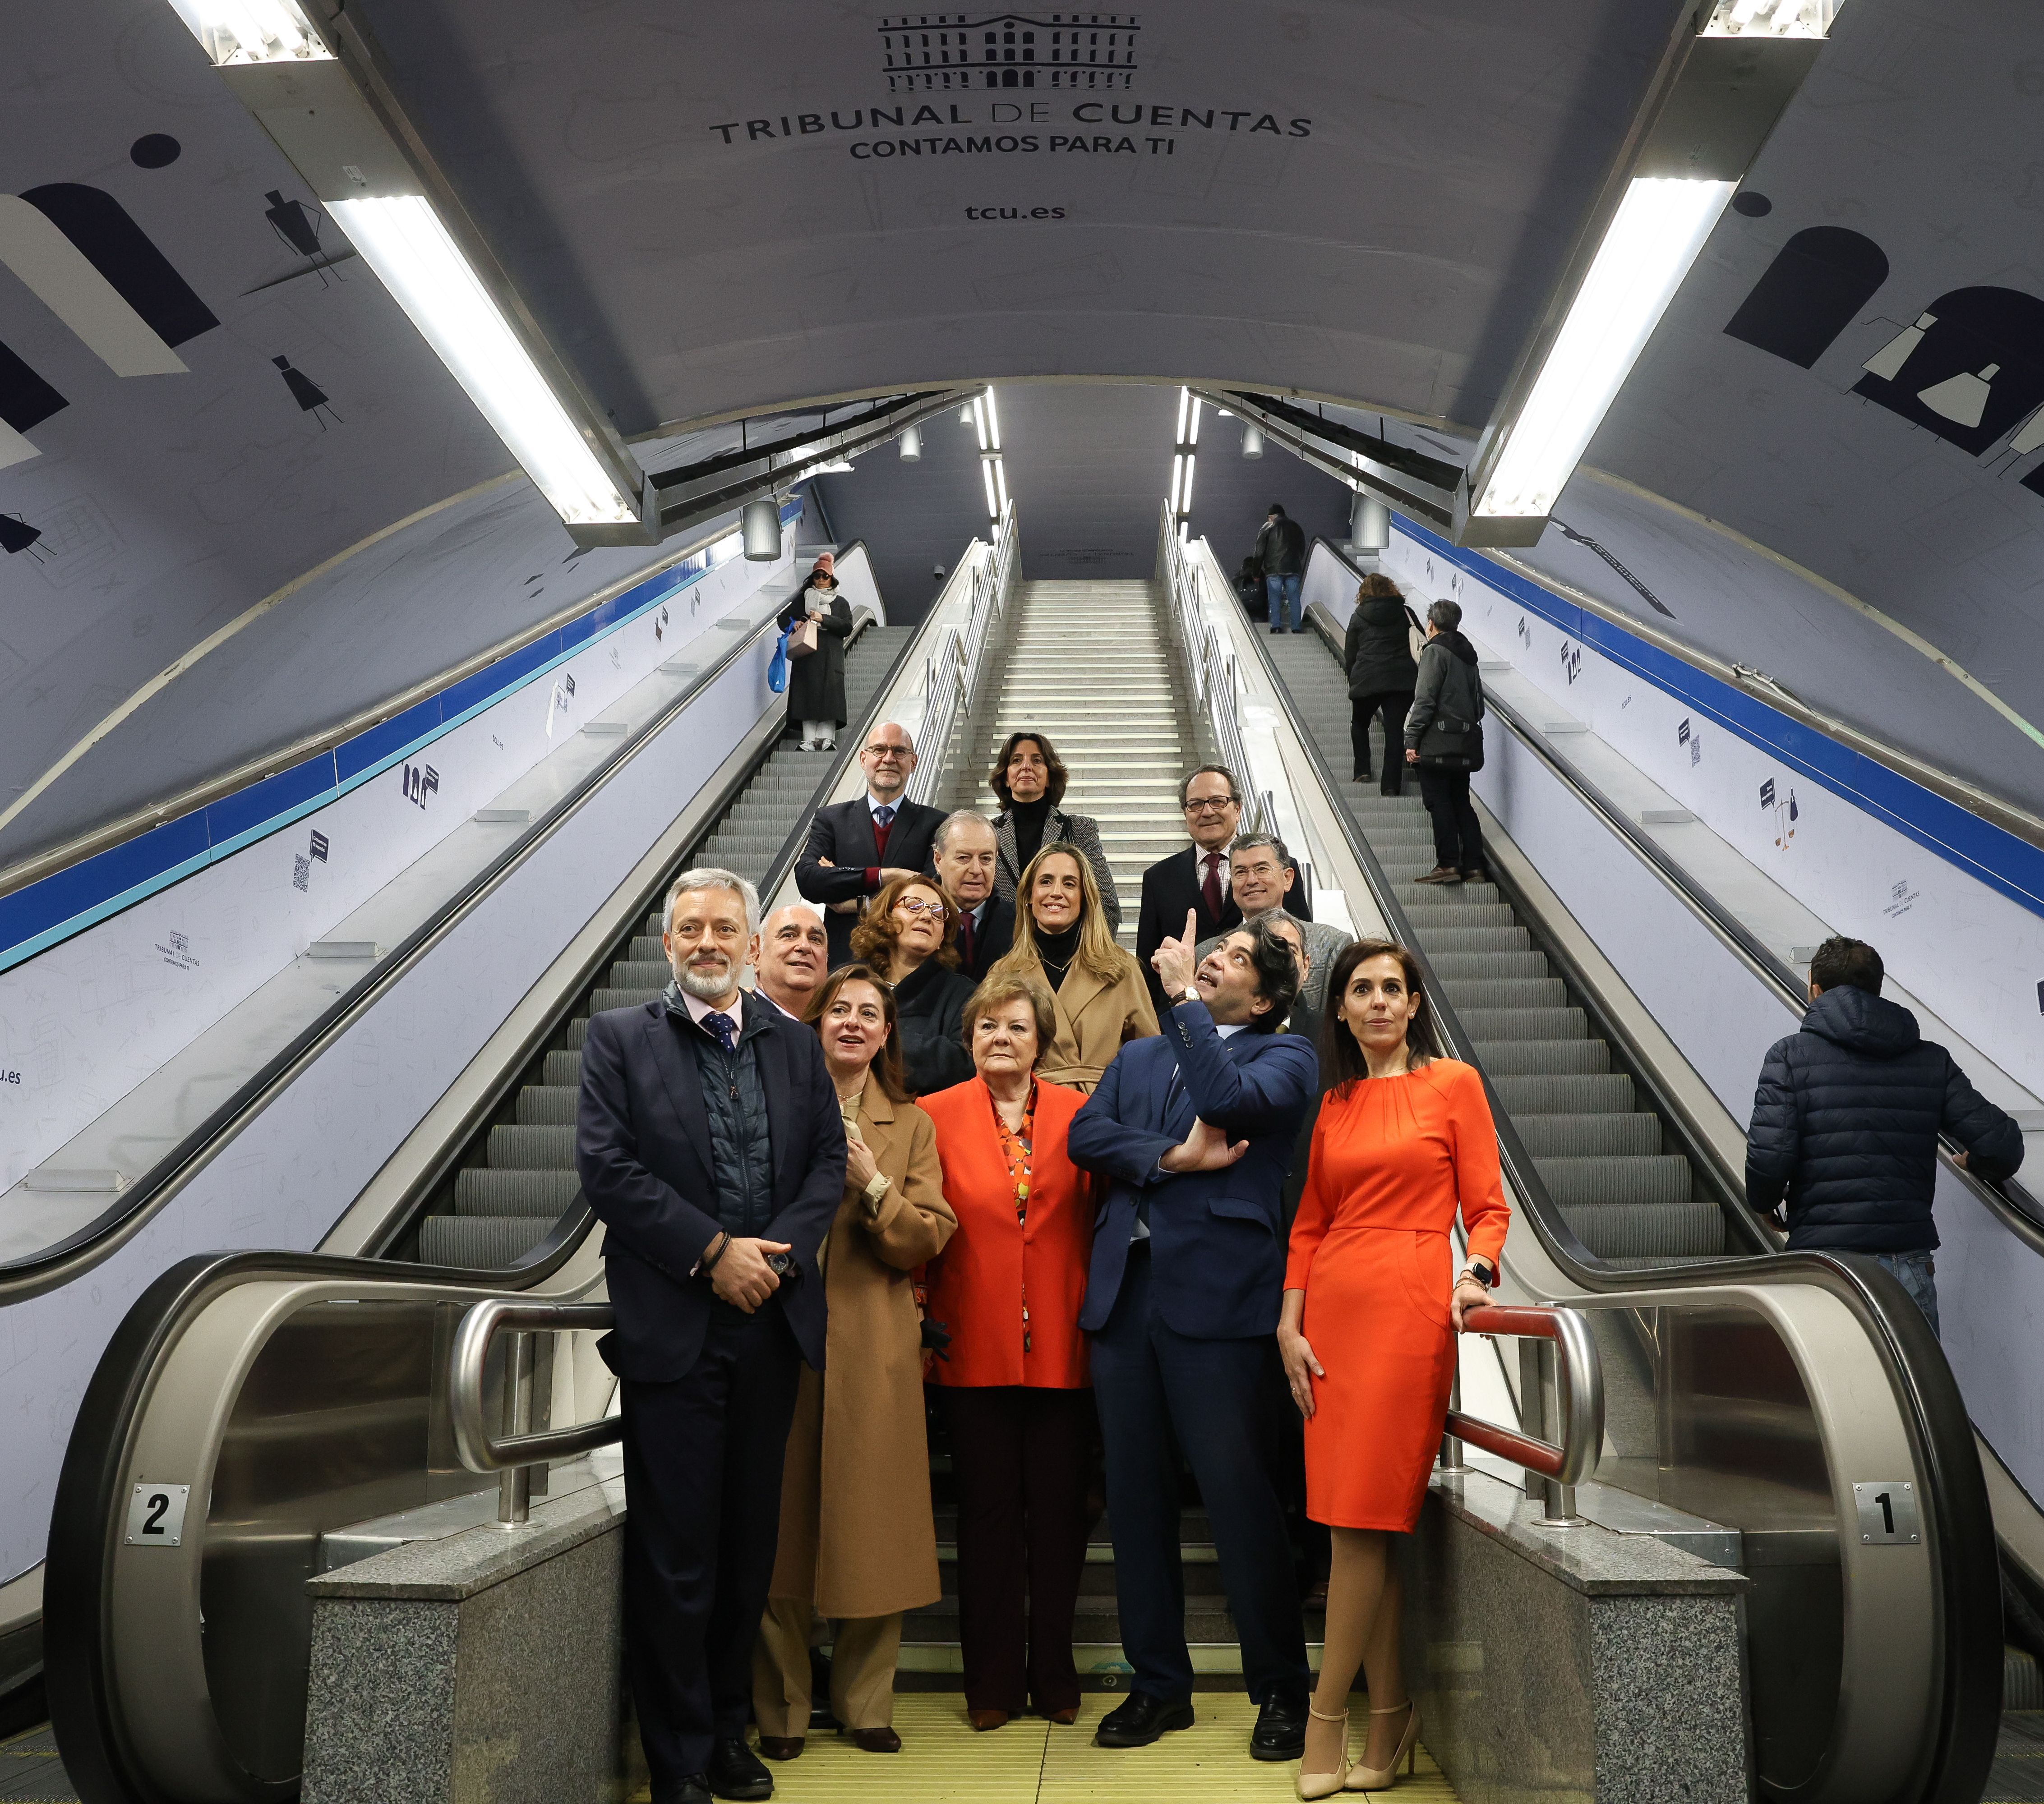 Homenaje del Metro de Madrid al Tribunal de Cuentas en su 40 aniversario